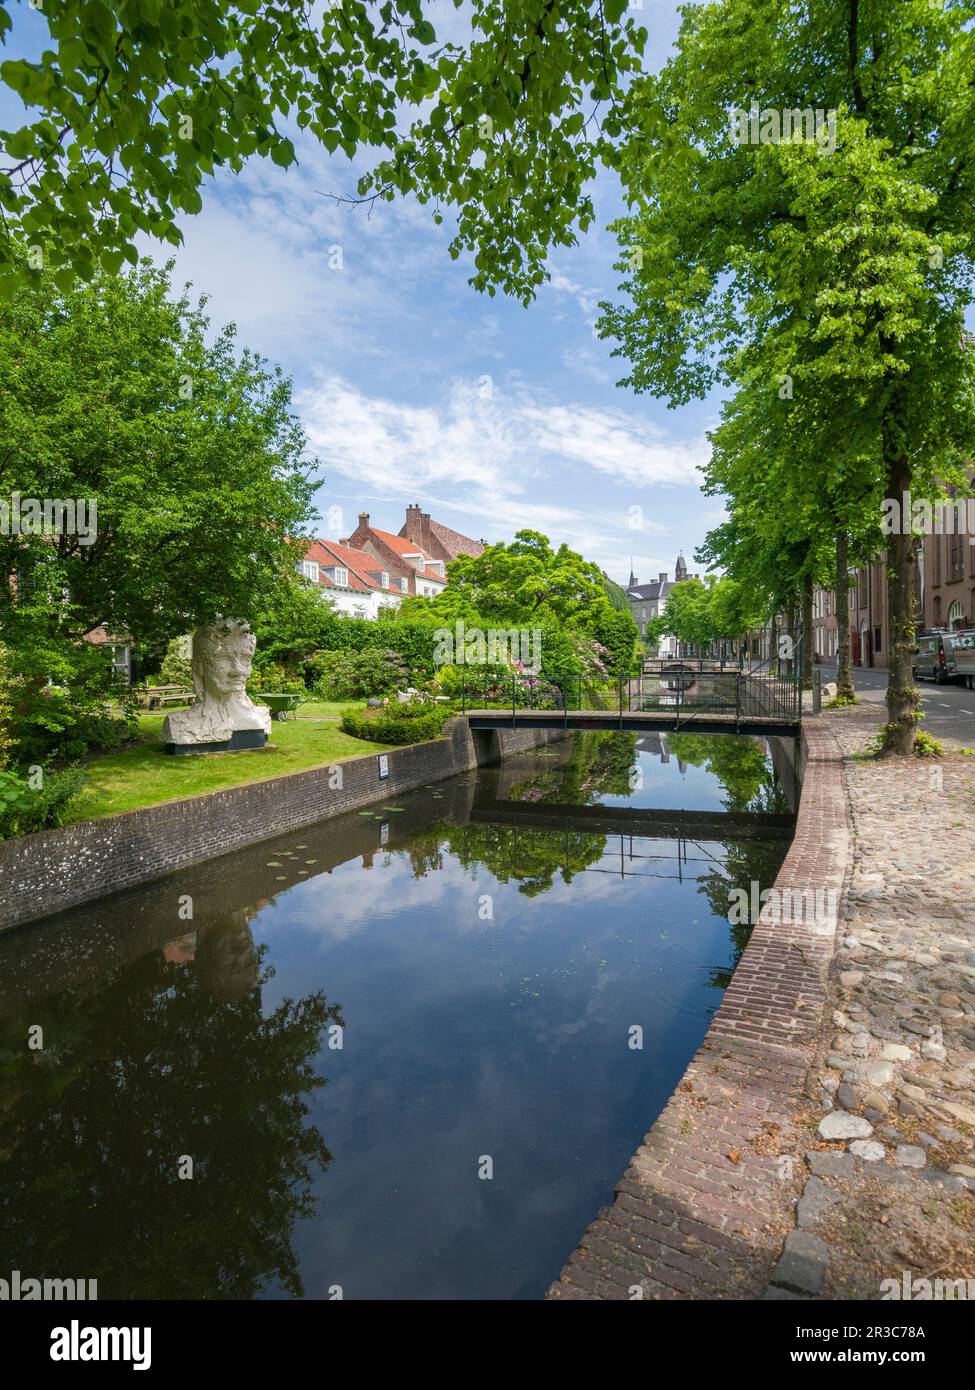 Le canal de Zuidsingel dans la ville hollandaise historique d'Amersfoort, pays-Bas, Europe. Banque D'Images